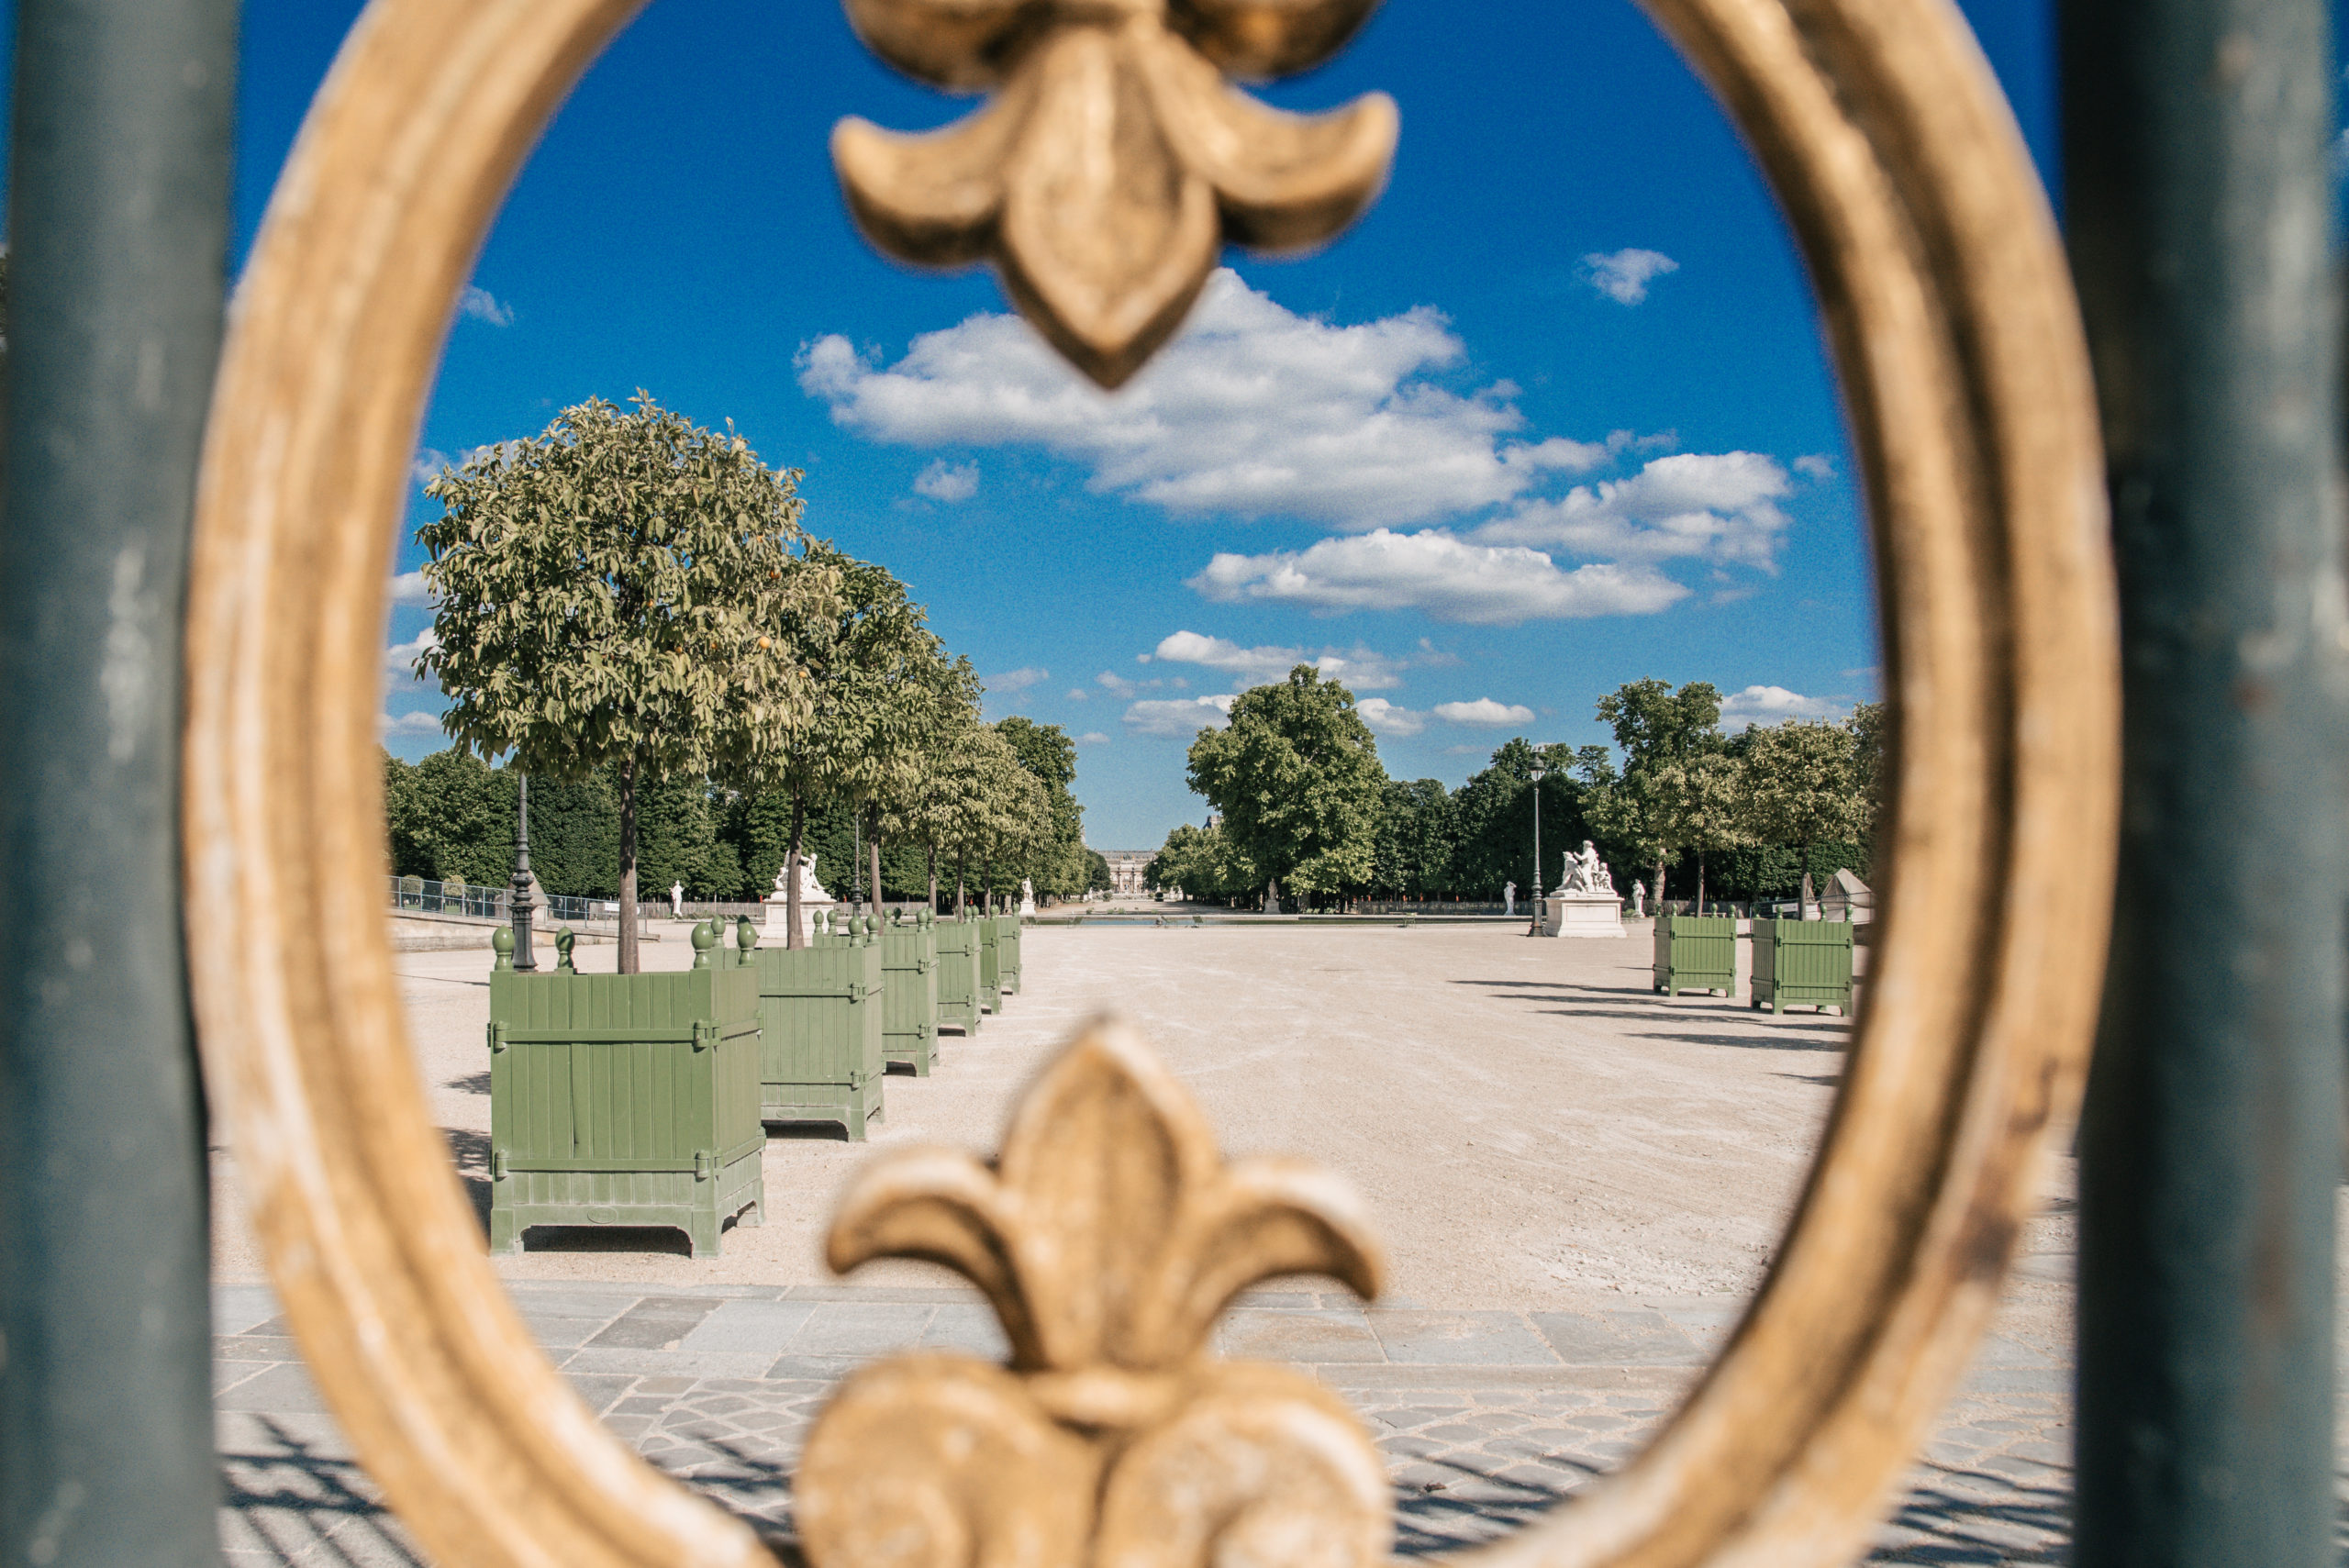 Jardin des tuileries, parc parisien